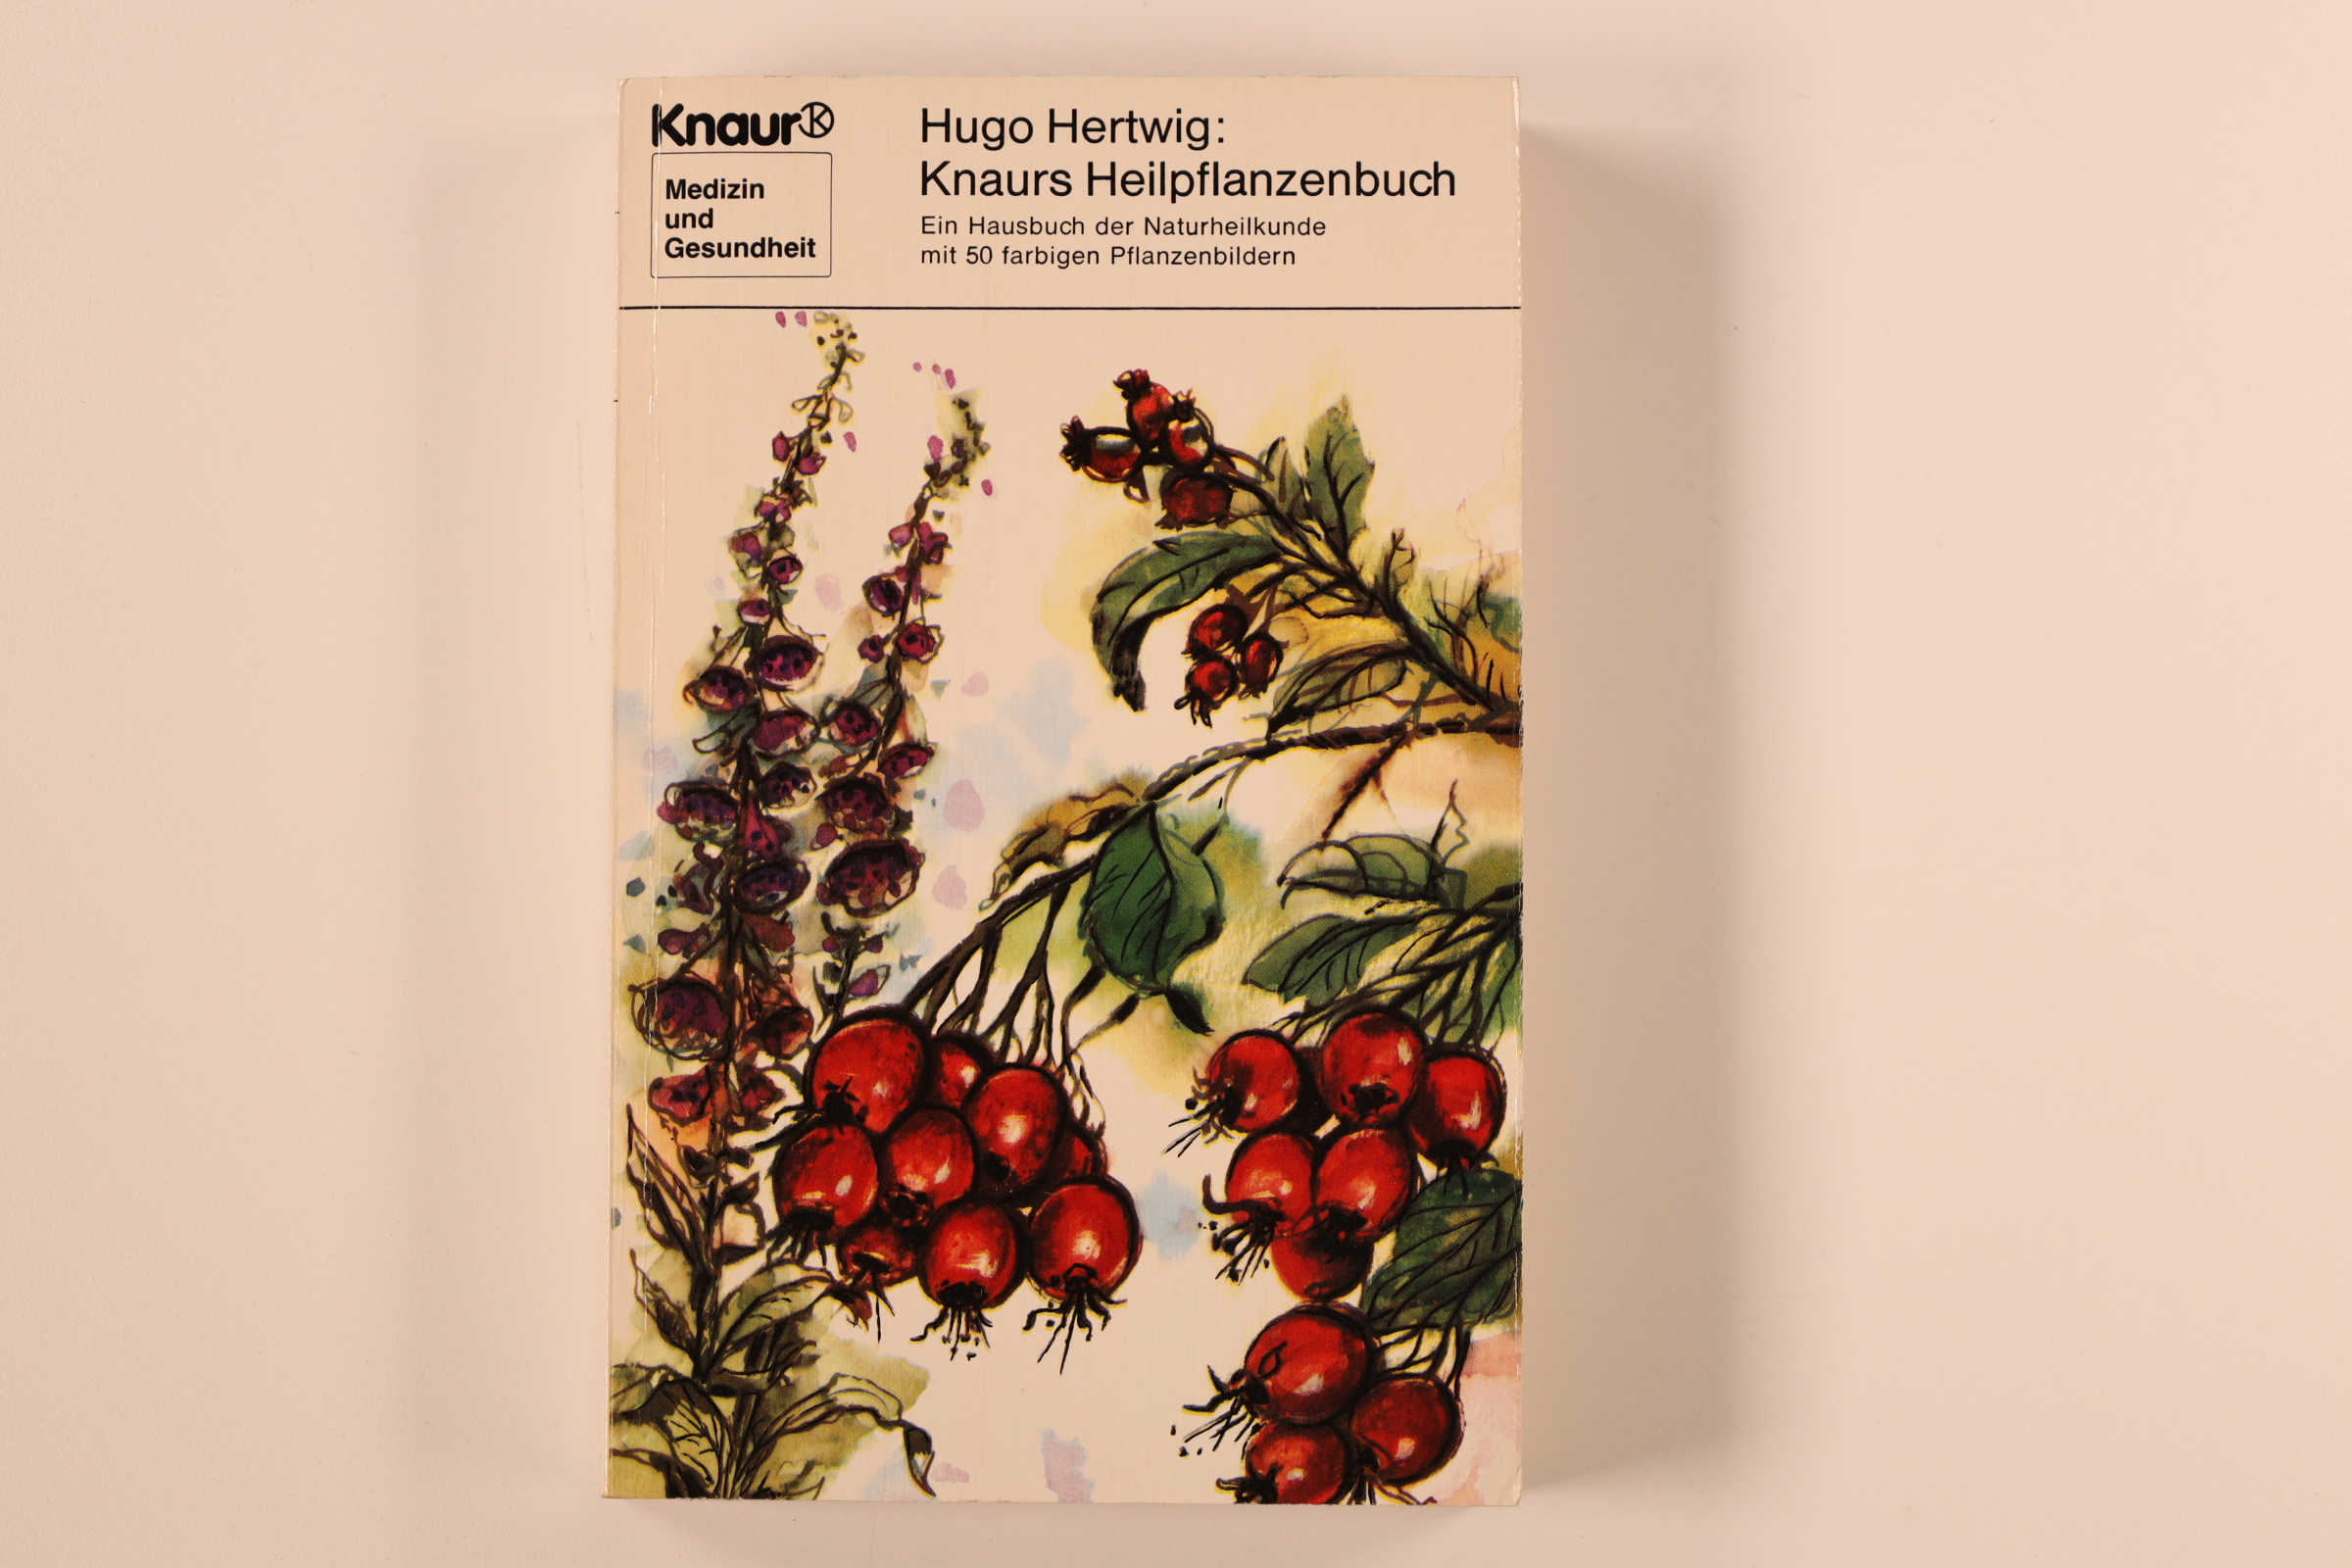 KNAURS HEILPFLANZENBUCH. e. Hausbuch d. Naturheilkunde - Hertwig, Hugo